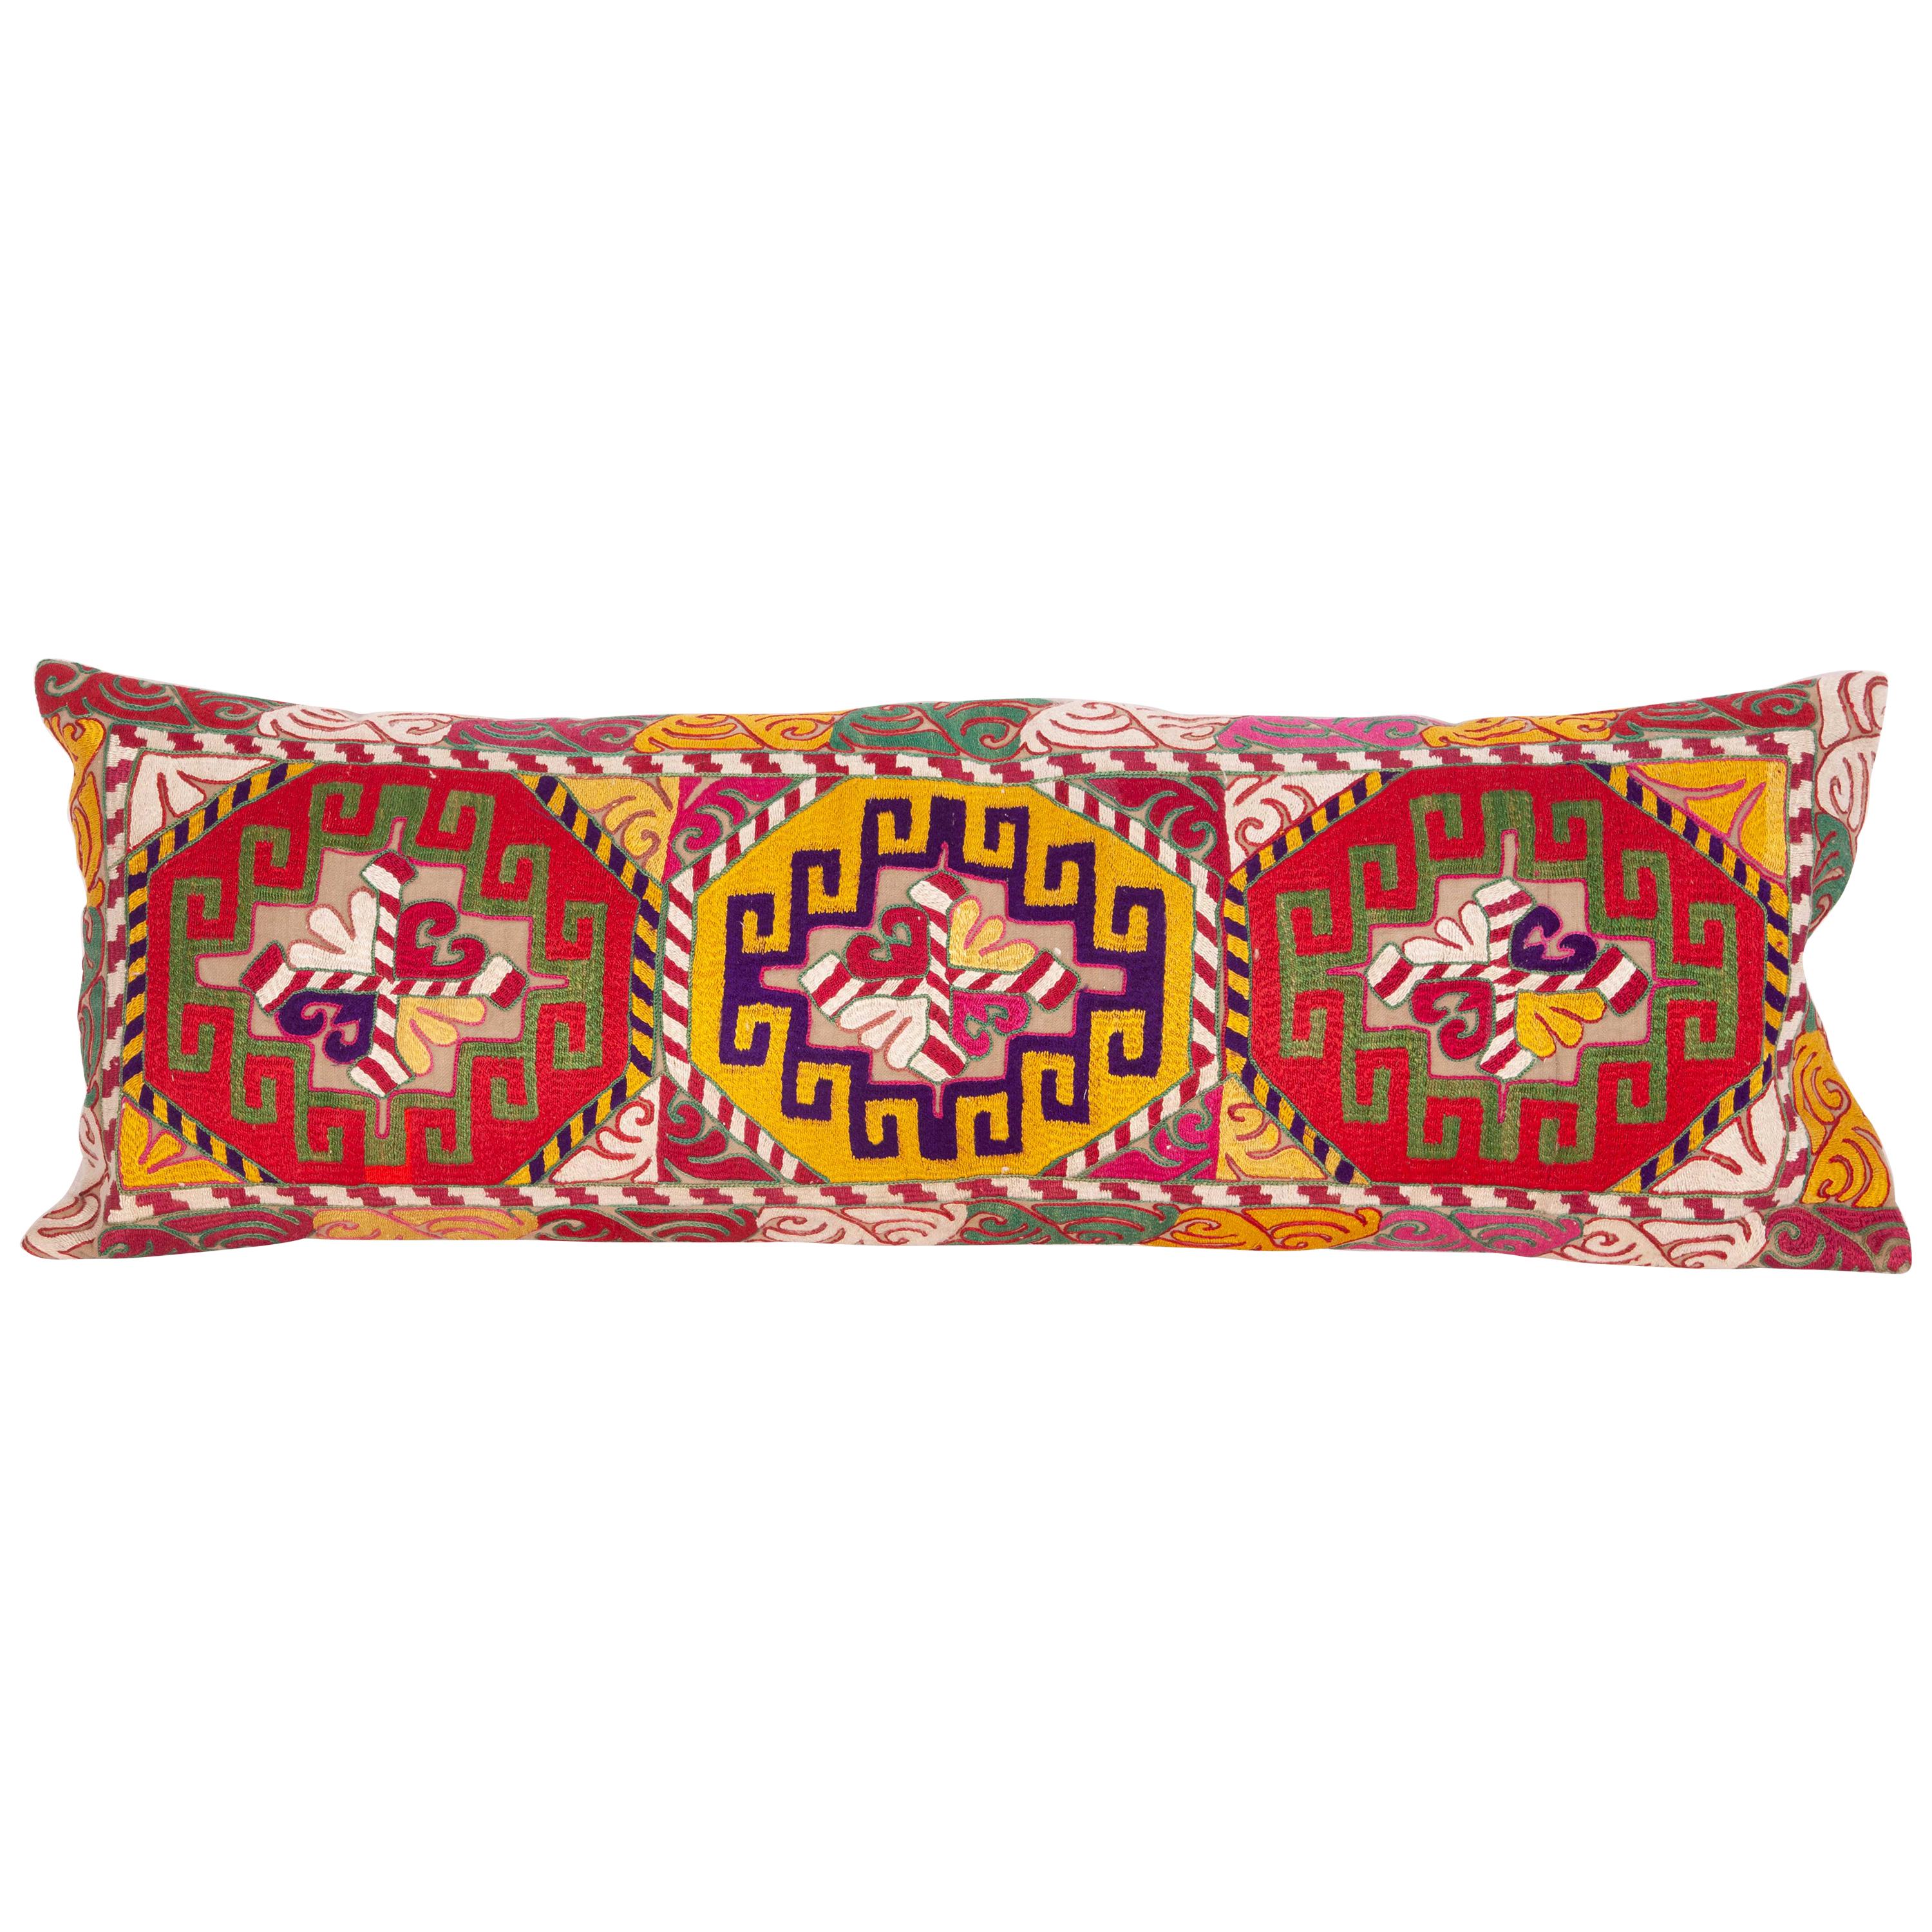 Taie d'oreiller lombaire réalisée à partir d'un panneau Mafrash brodé ouzbek